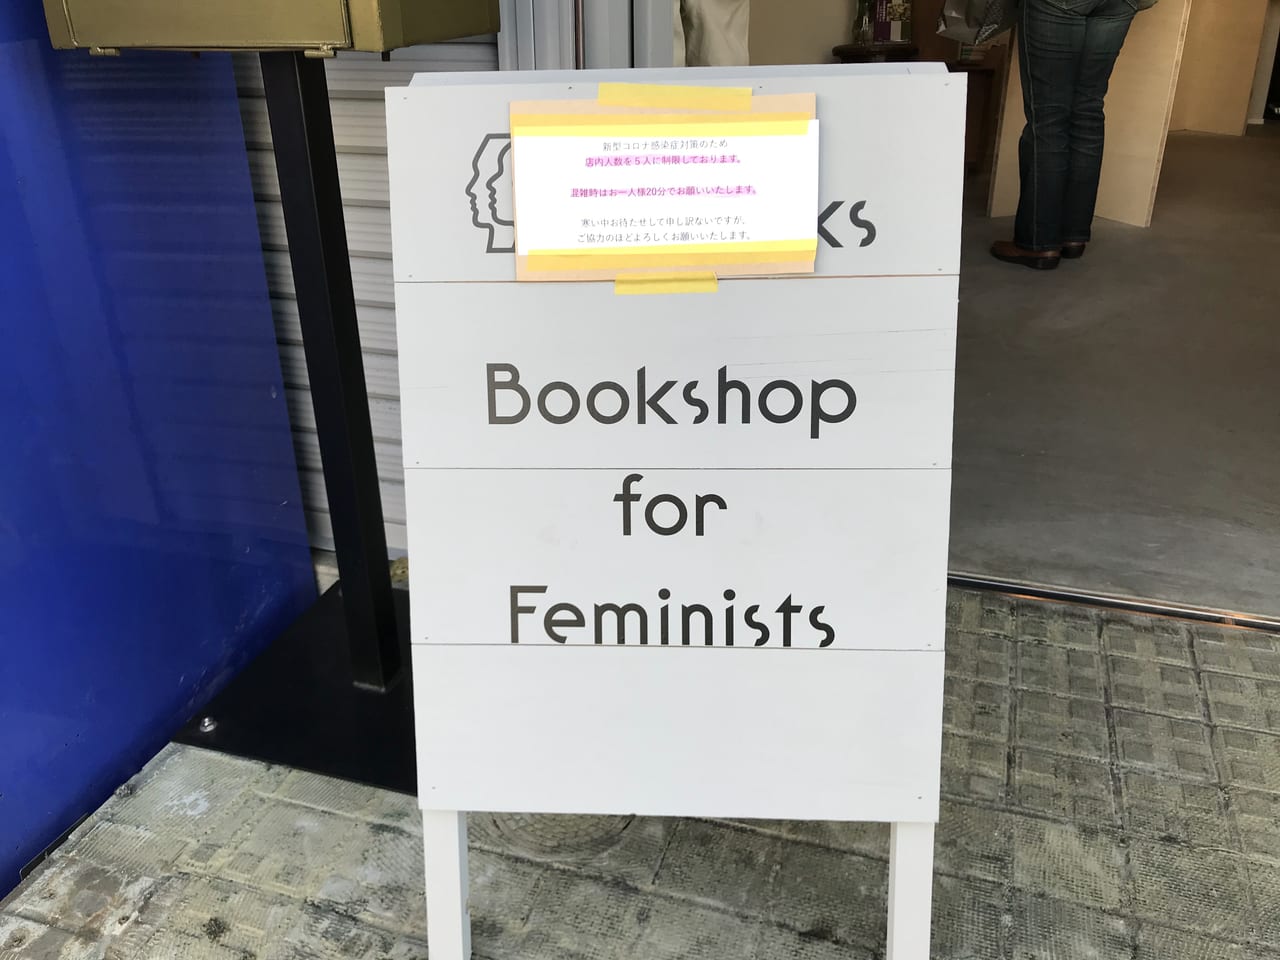 世田谷区新代田小さなフェミニスト書店「エトセトラブックス BOOKSHOP」オープン